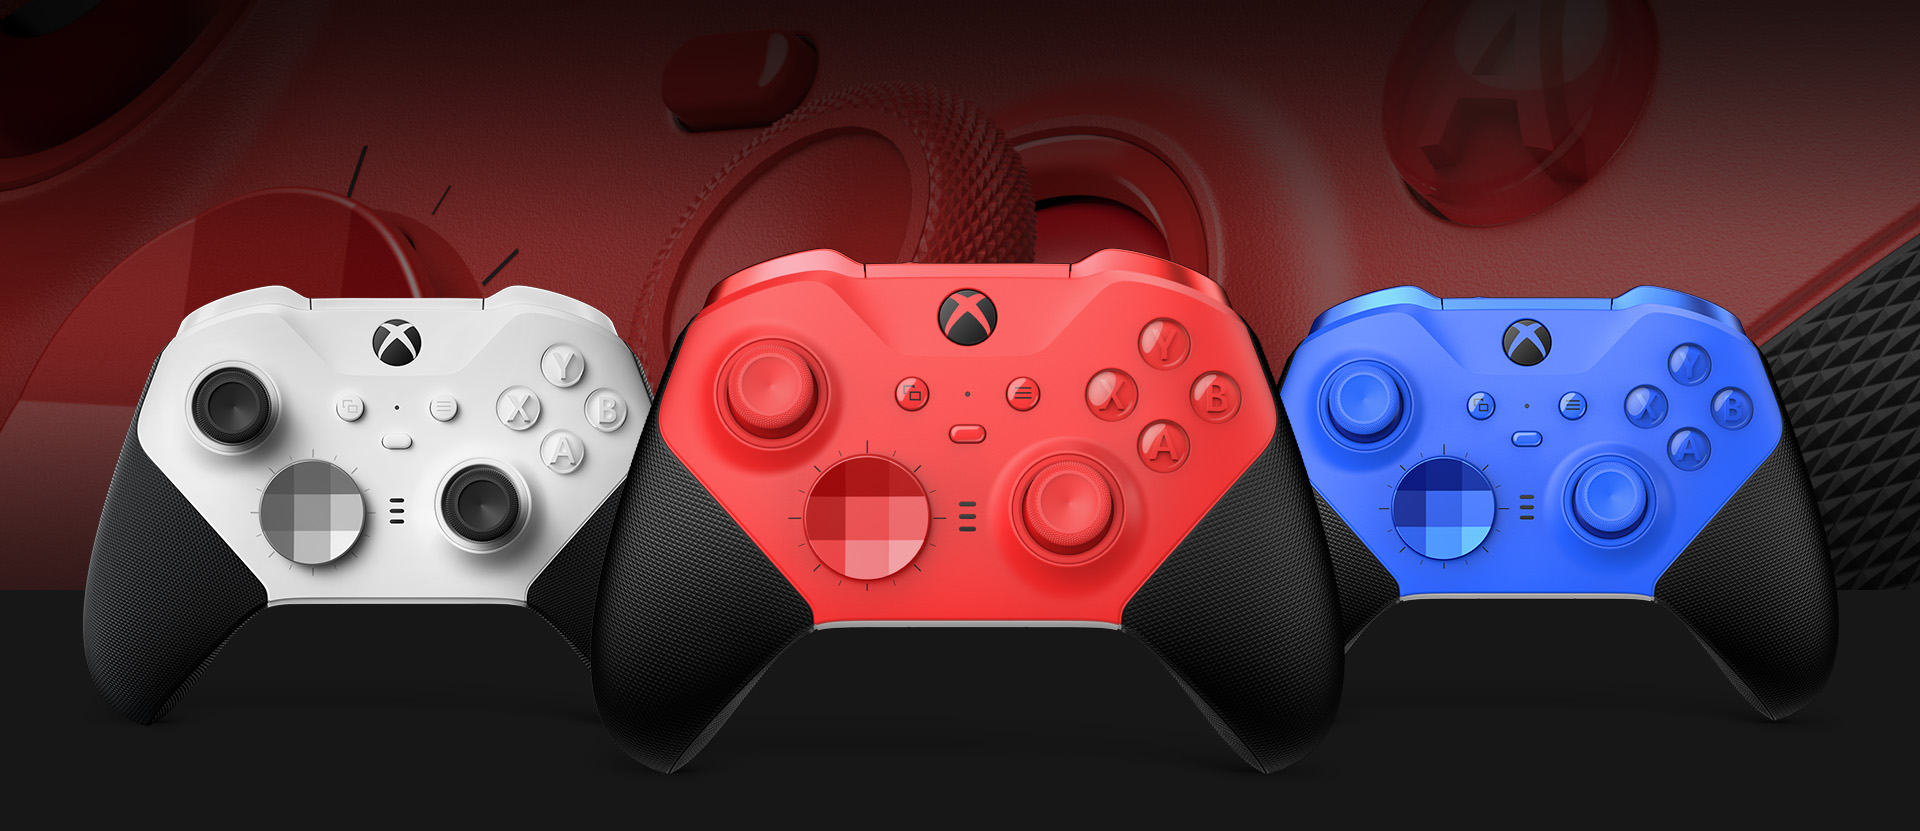 Bezprzewodowy kontroler Xbox Elite Series 2 – Core (czerwony) widziany z przodu z innymi opcjami kolorystycznymi pokazanymi obok. W tle zbliżenie na drążki kontrolera i teksturowany uchwyt.